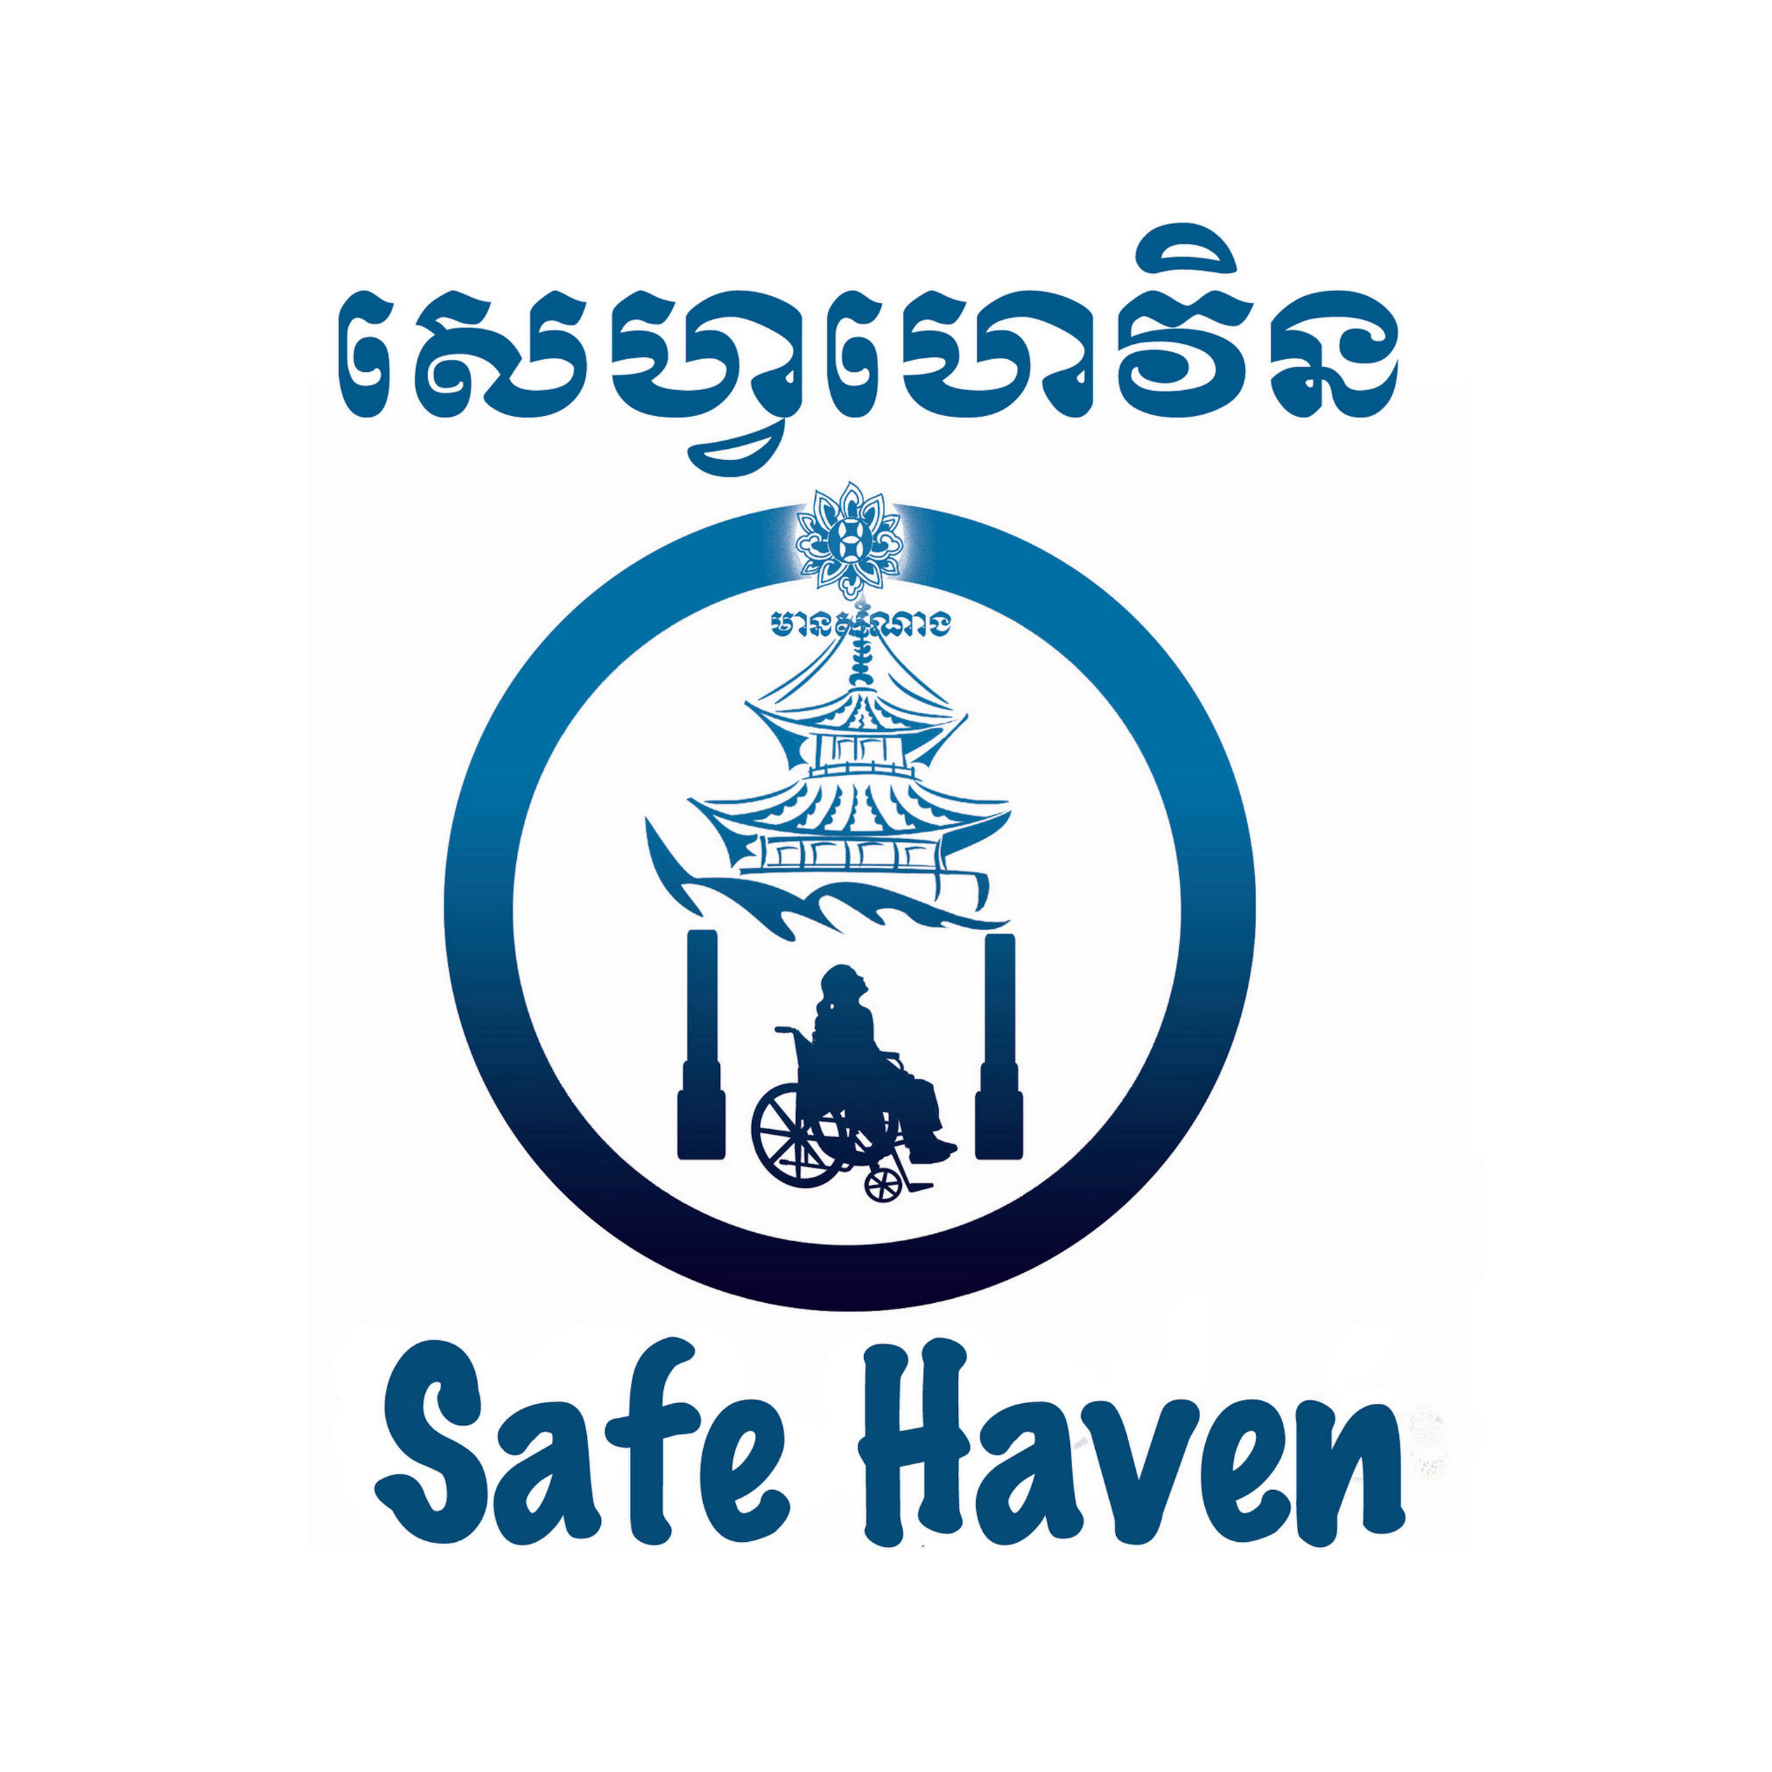 SAFE HAVEN logo (15 x 15 cm)